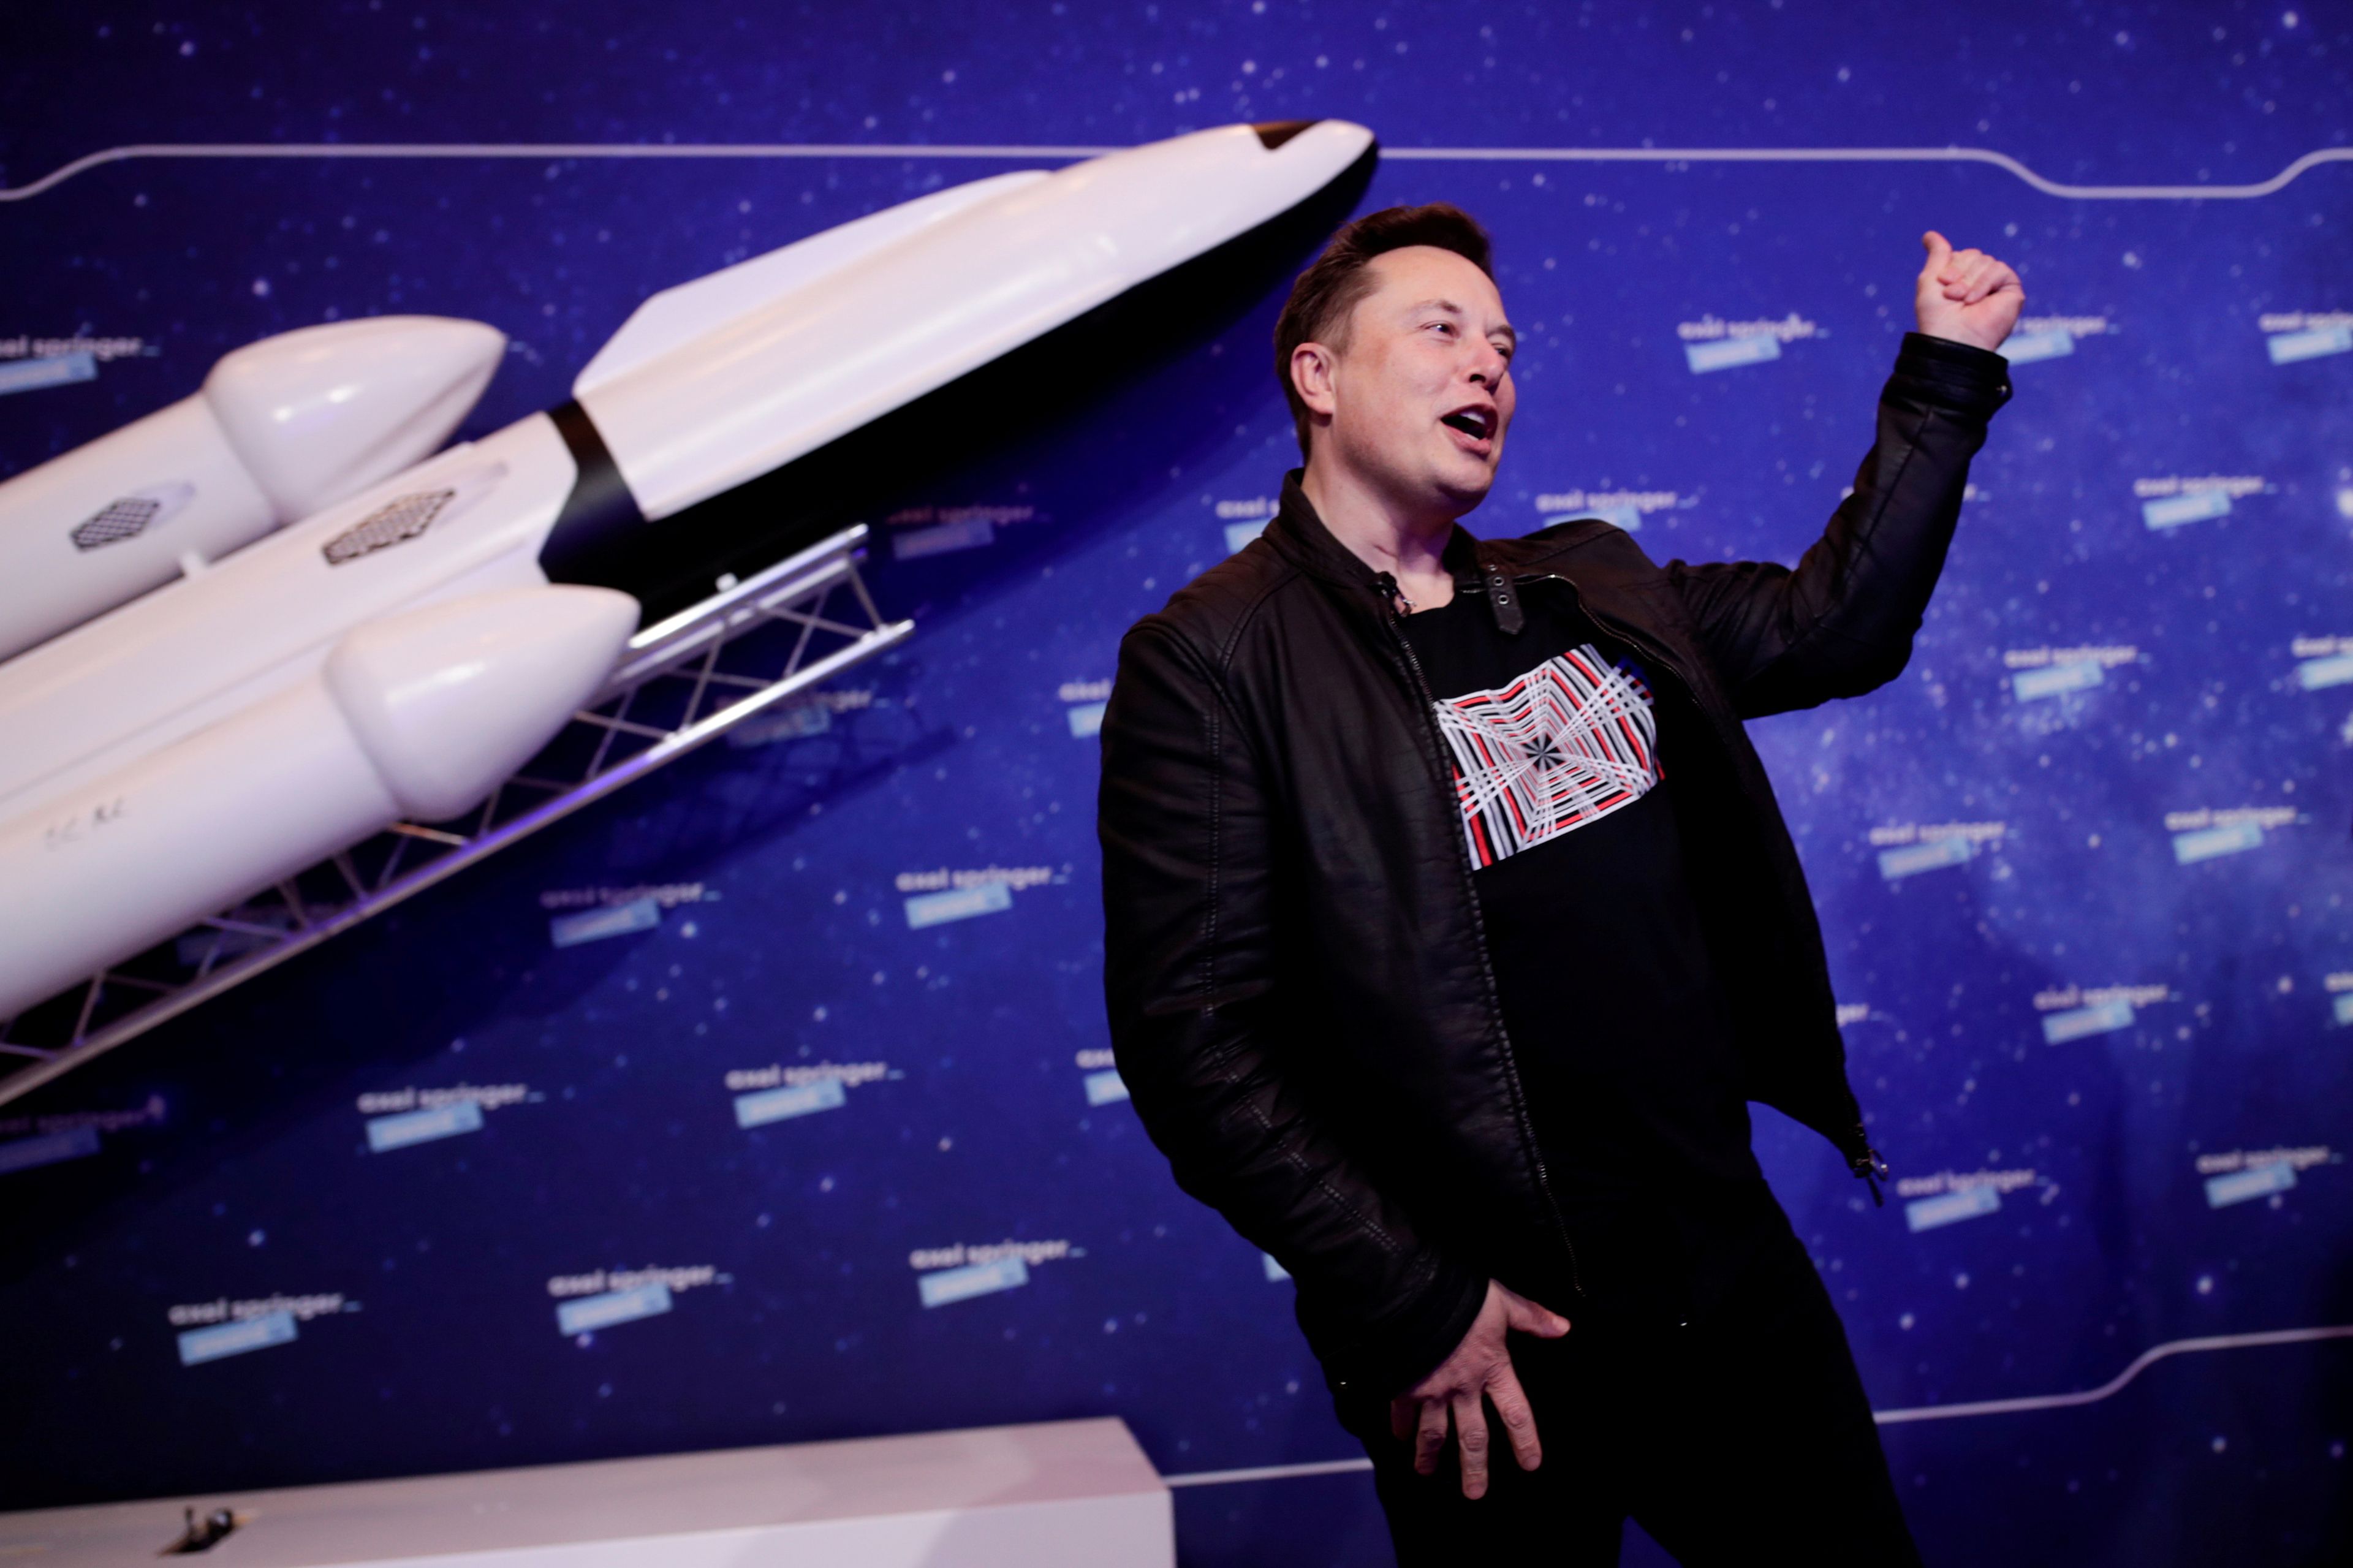 6 secretos de Elon Musk para alcanzar el éxito: olvídate del dinero, persigue tus pasiones y diviértete